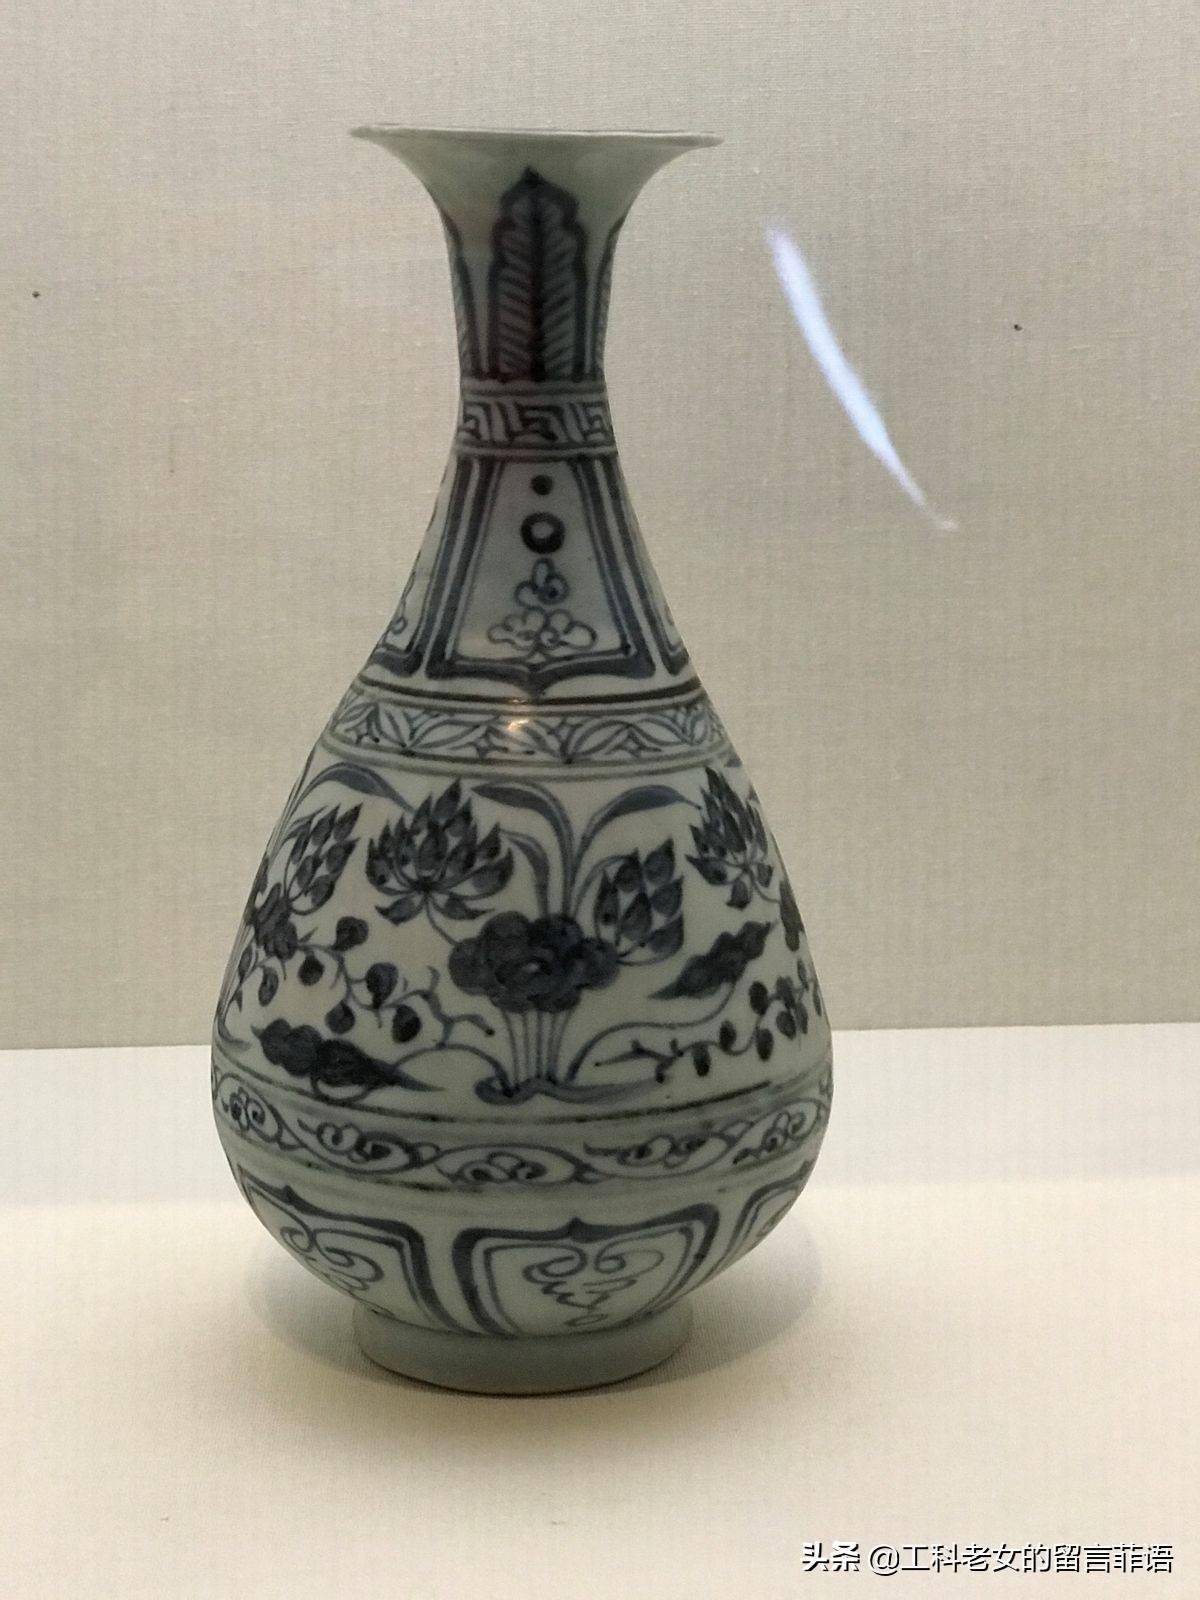 国博元代陶器展:元青花梅瓶,执壶和玉壶春瓶